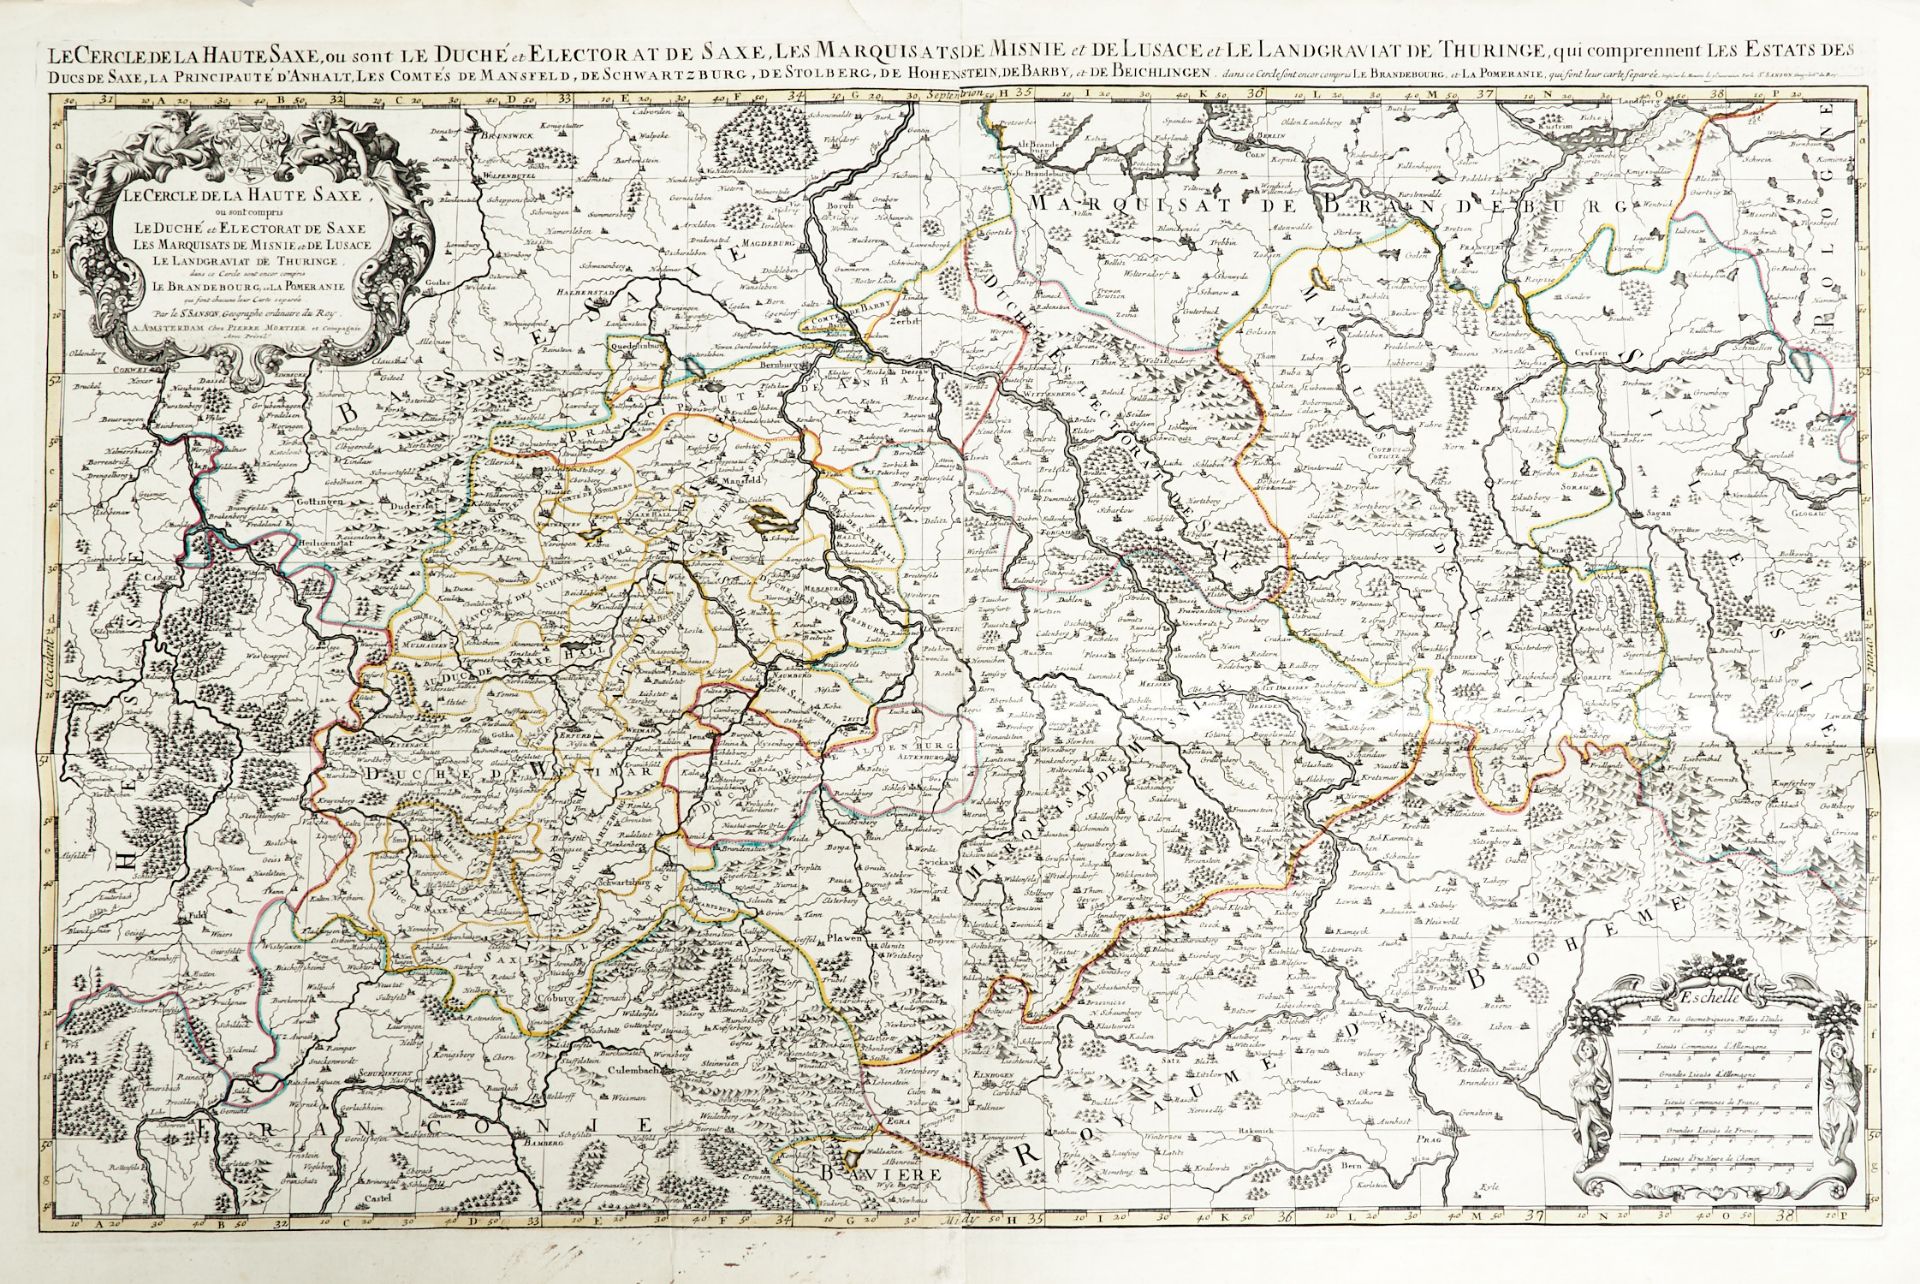 Sachsen Thüringen Konvolut - 12 Kupferstichkarten des 16. bis 18. Jhdts. von verschied. Stechern und - Image 4 of 8